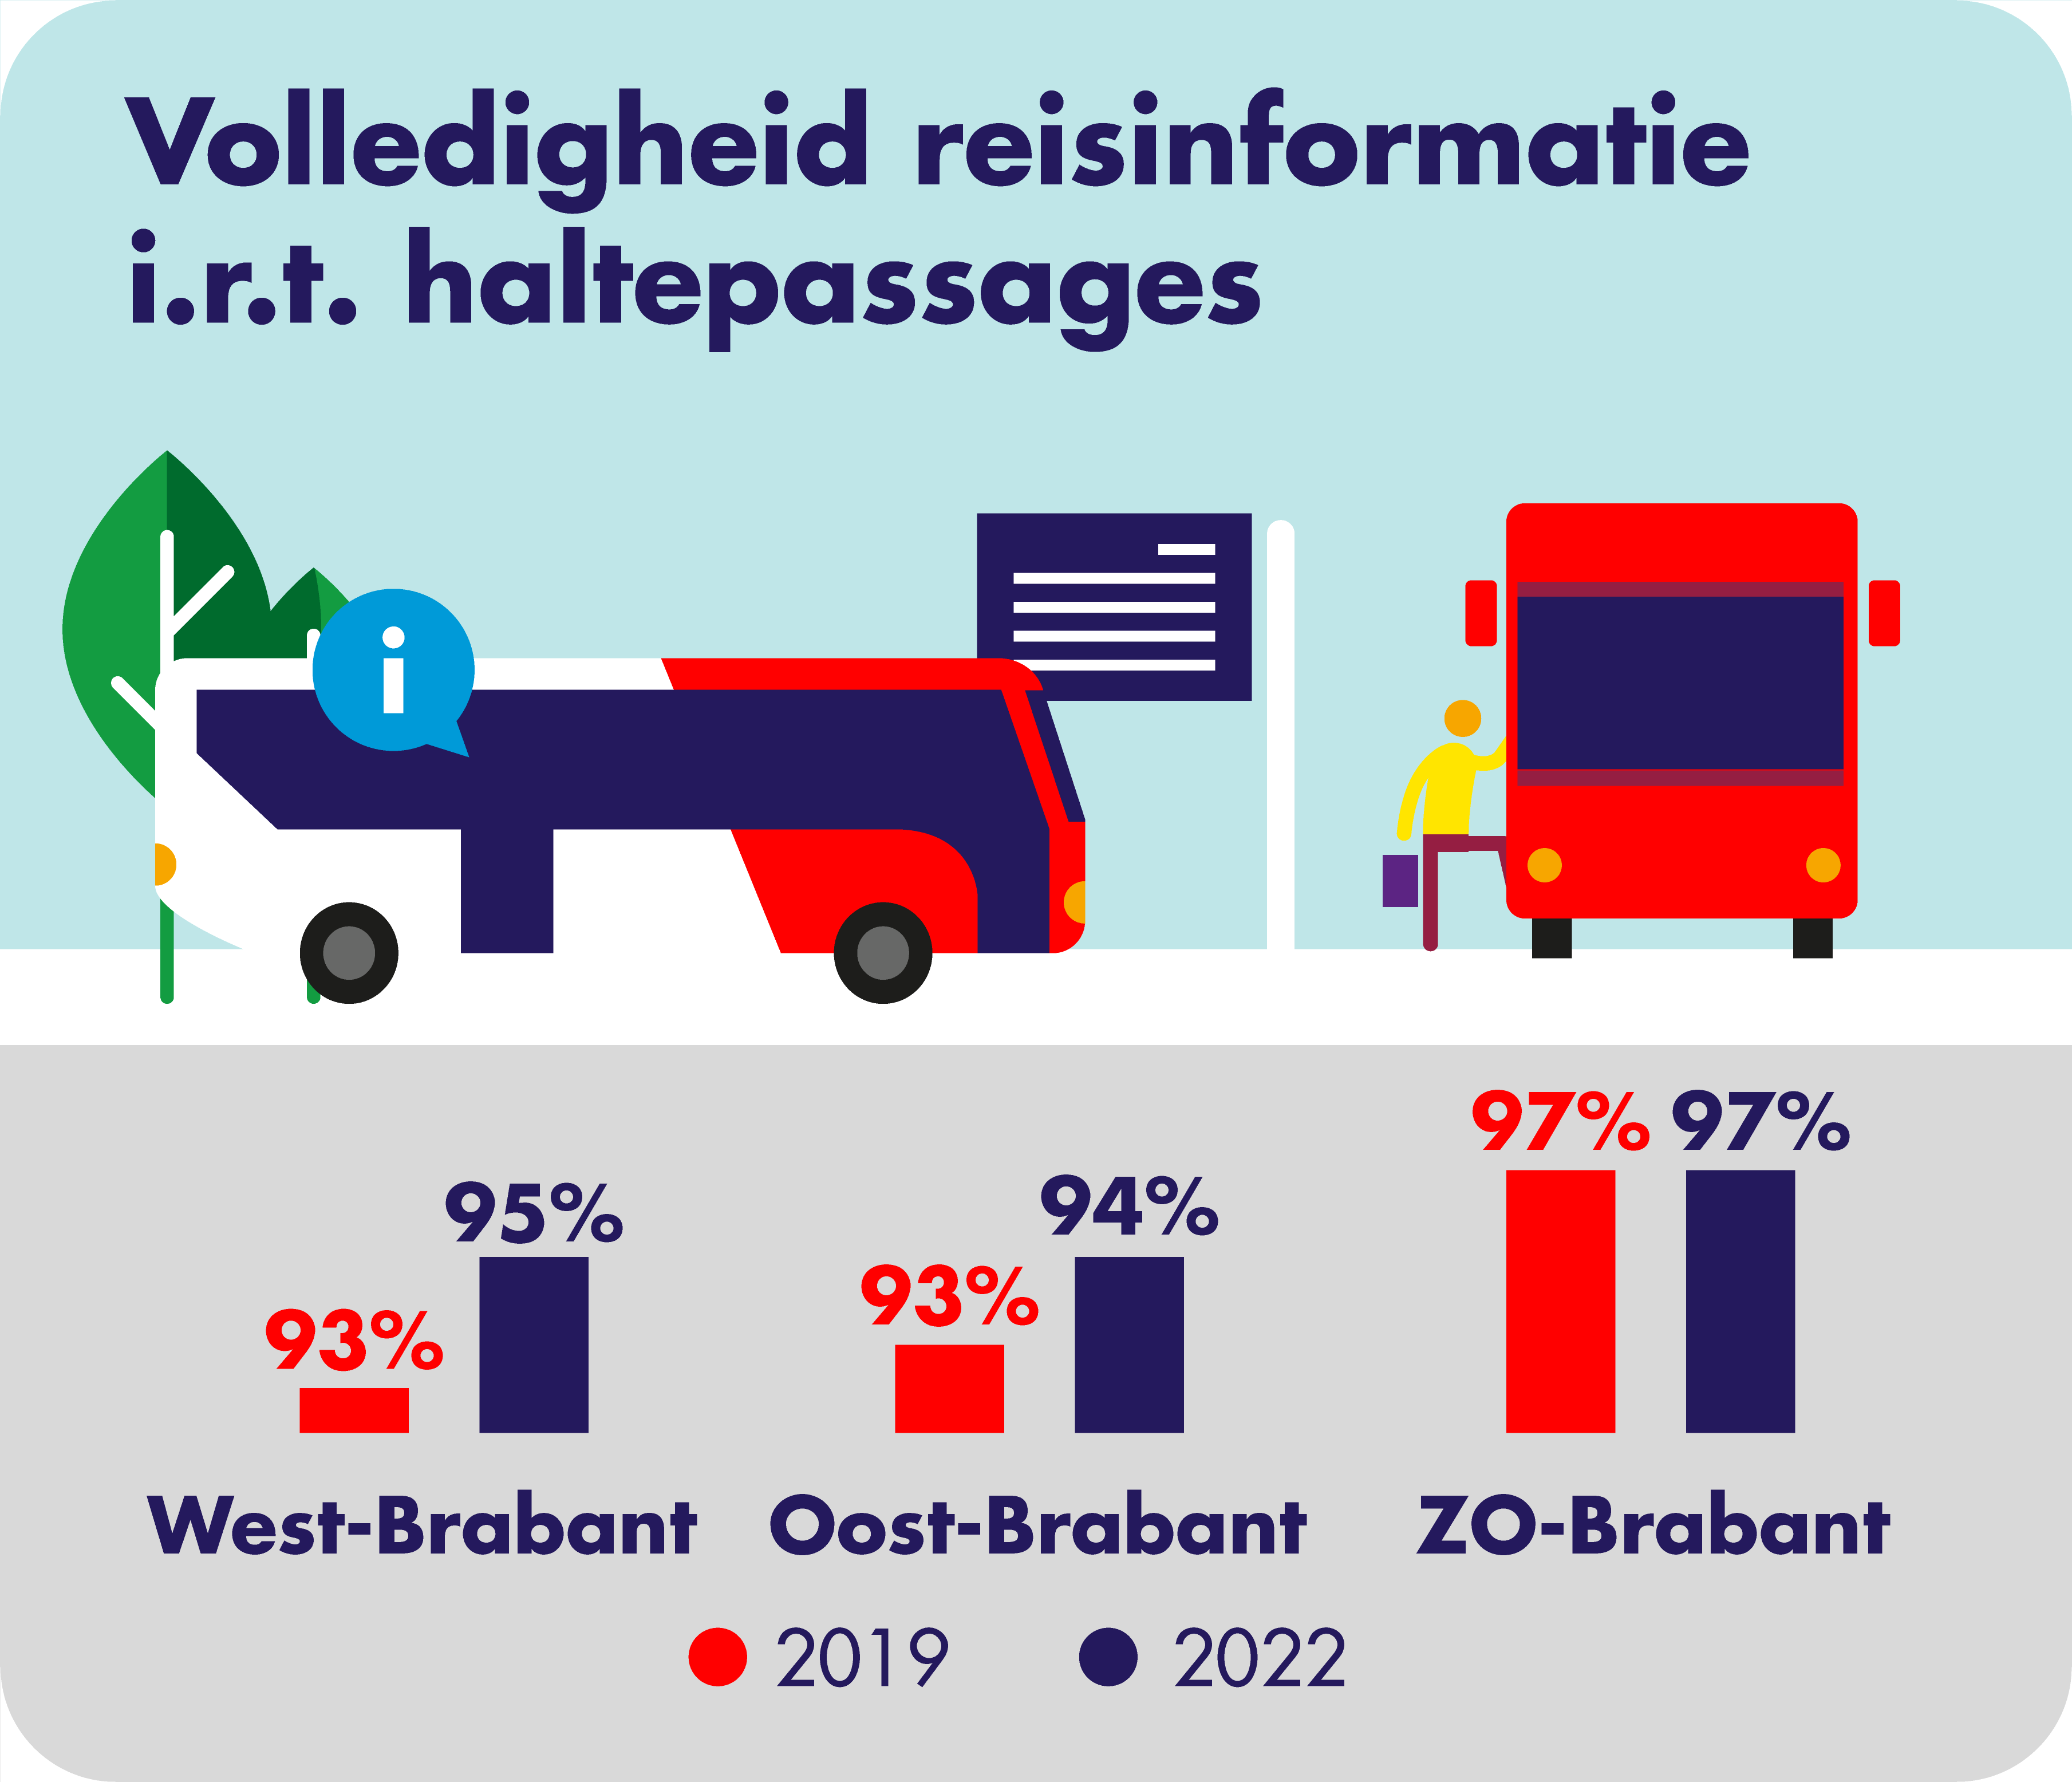 Op deze afbeelding is de volledigheid van de reisinformatie in relatie tot haltepassages per concessiegebied weergegeven. In West-Brabant was dit in 2019 voor 93% en in 2022 voor 95% volledig. In Oost-Brabant was dit in 2019 voor 93% en in 2022 voor 94% volledig. In Zuidoost-Brabant was dit in zowel 2019 als 2022 voor 97% volledig. 